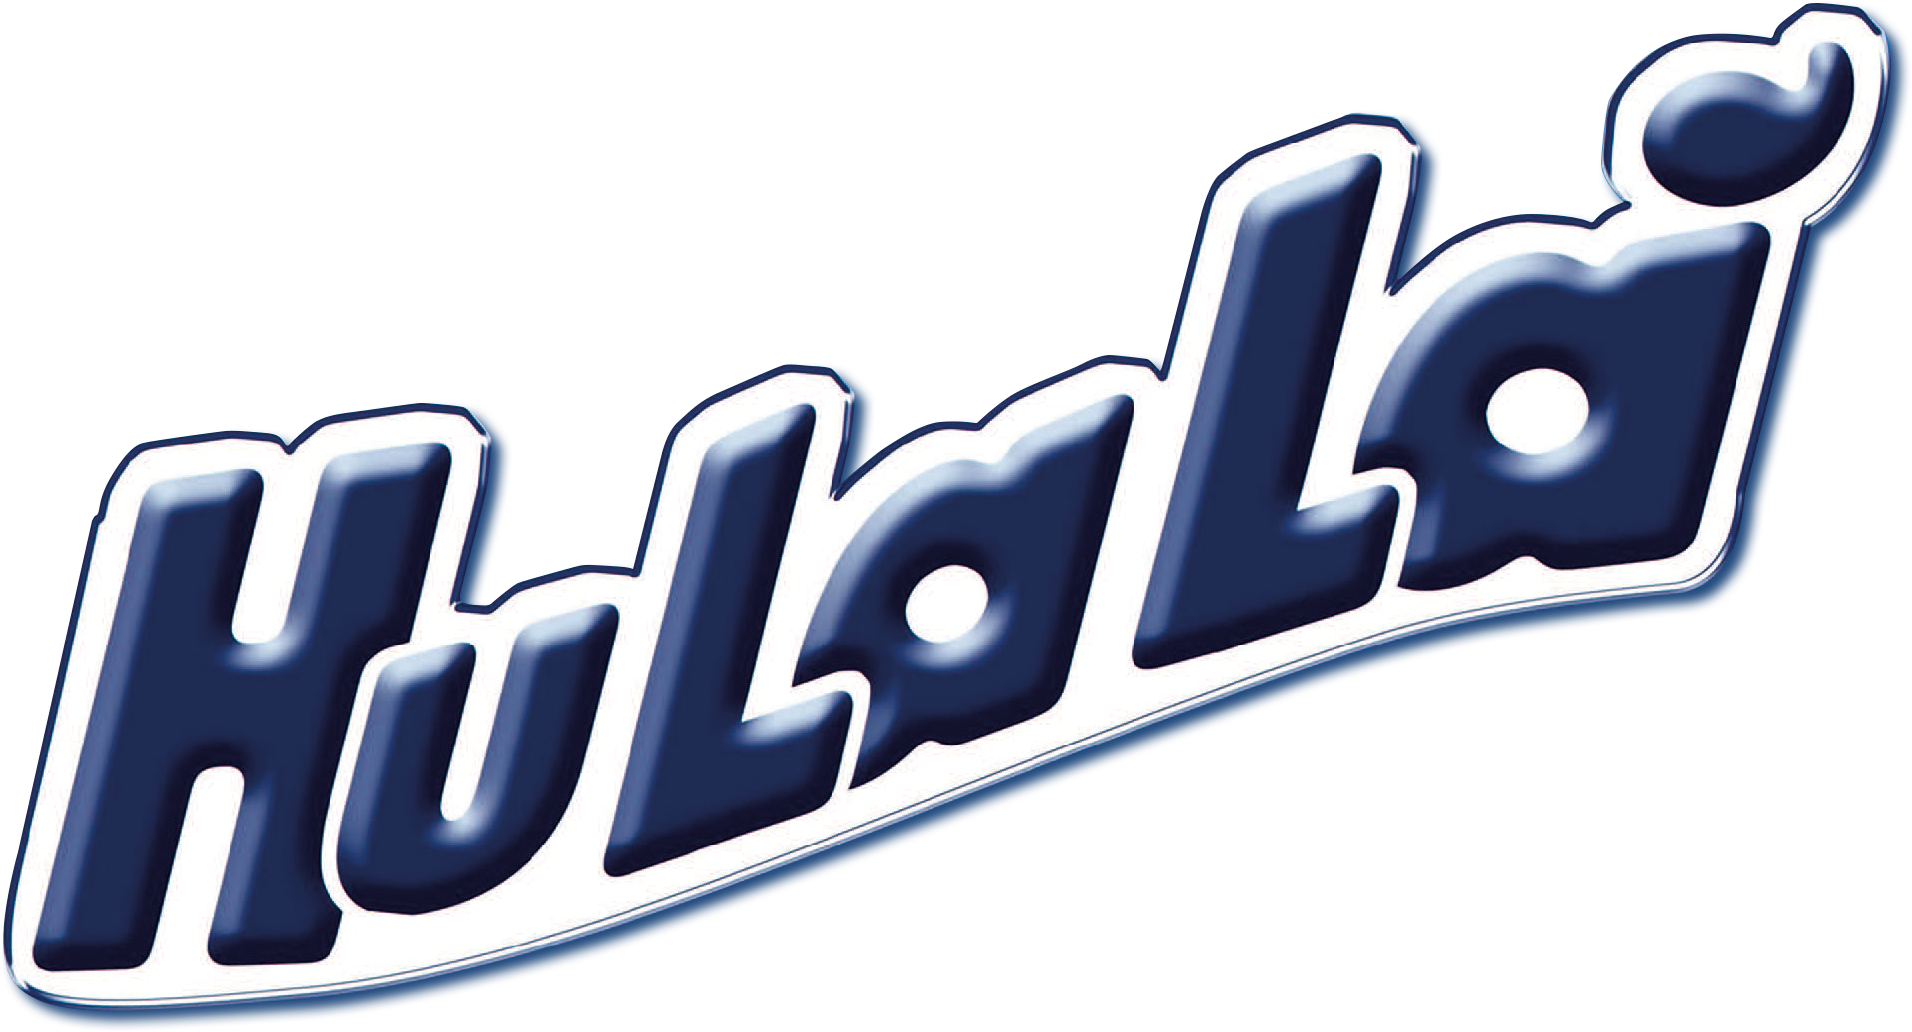 hulala_logo